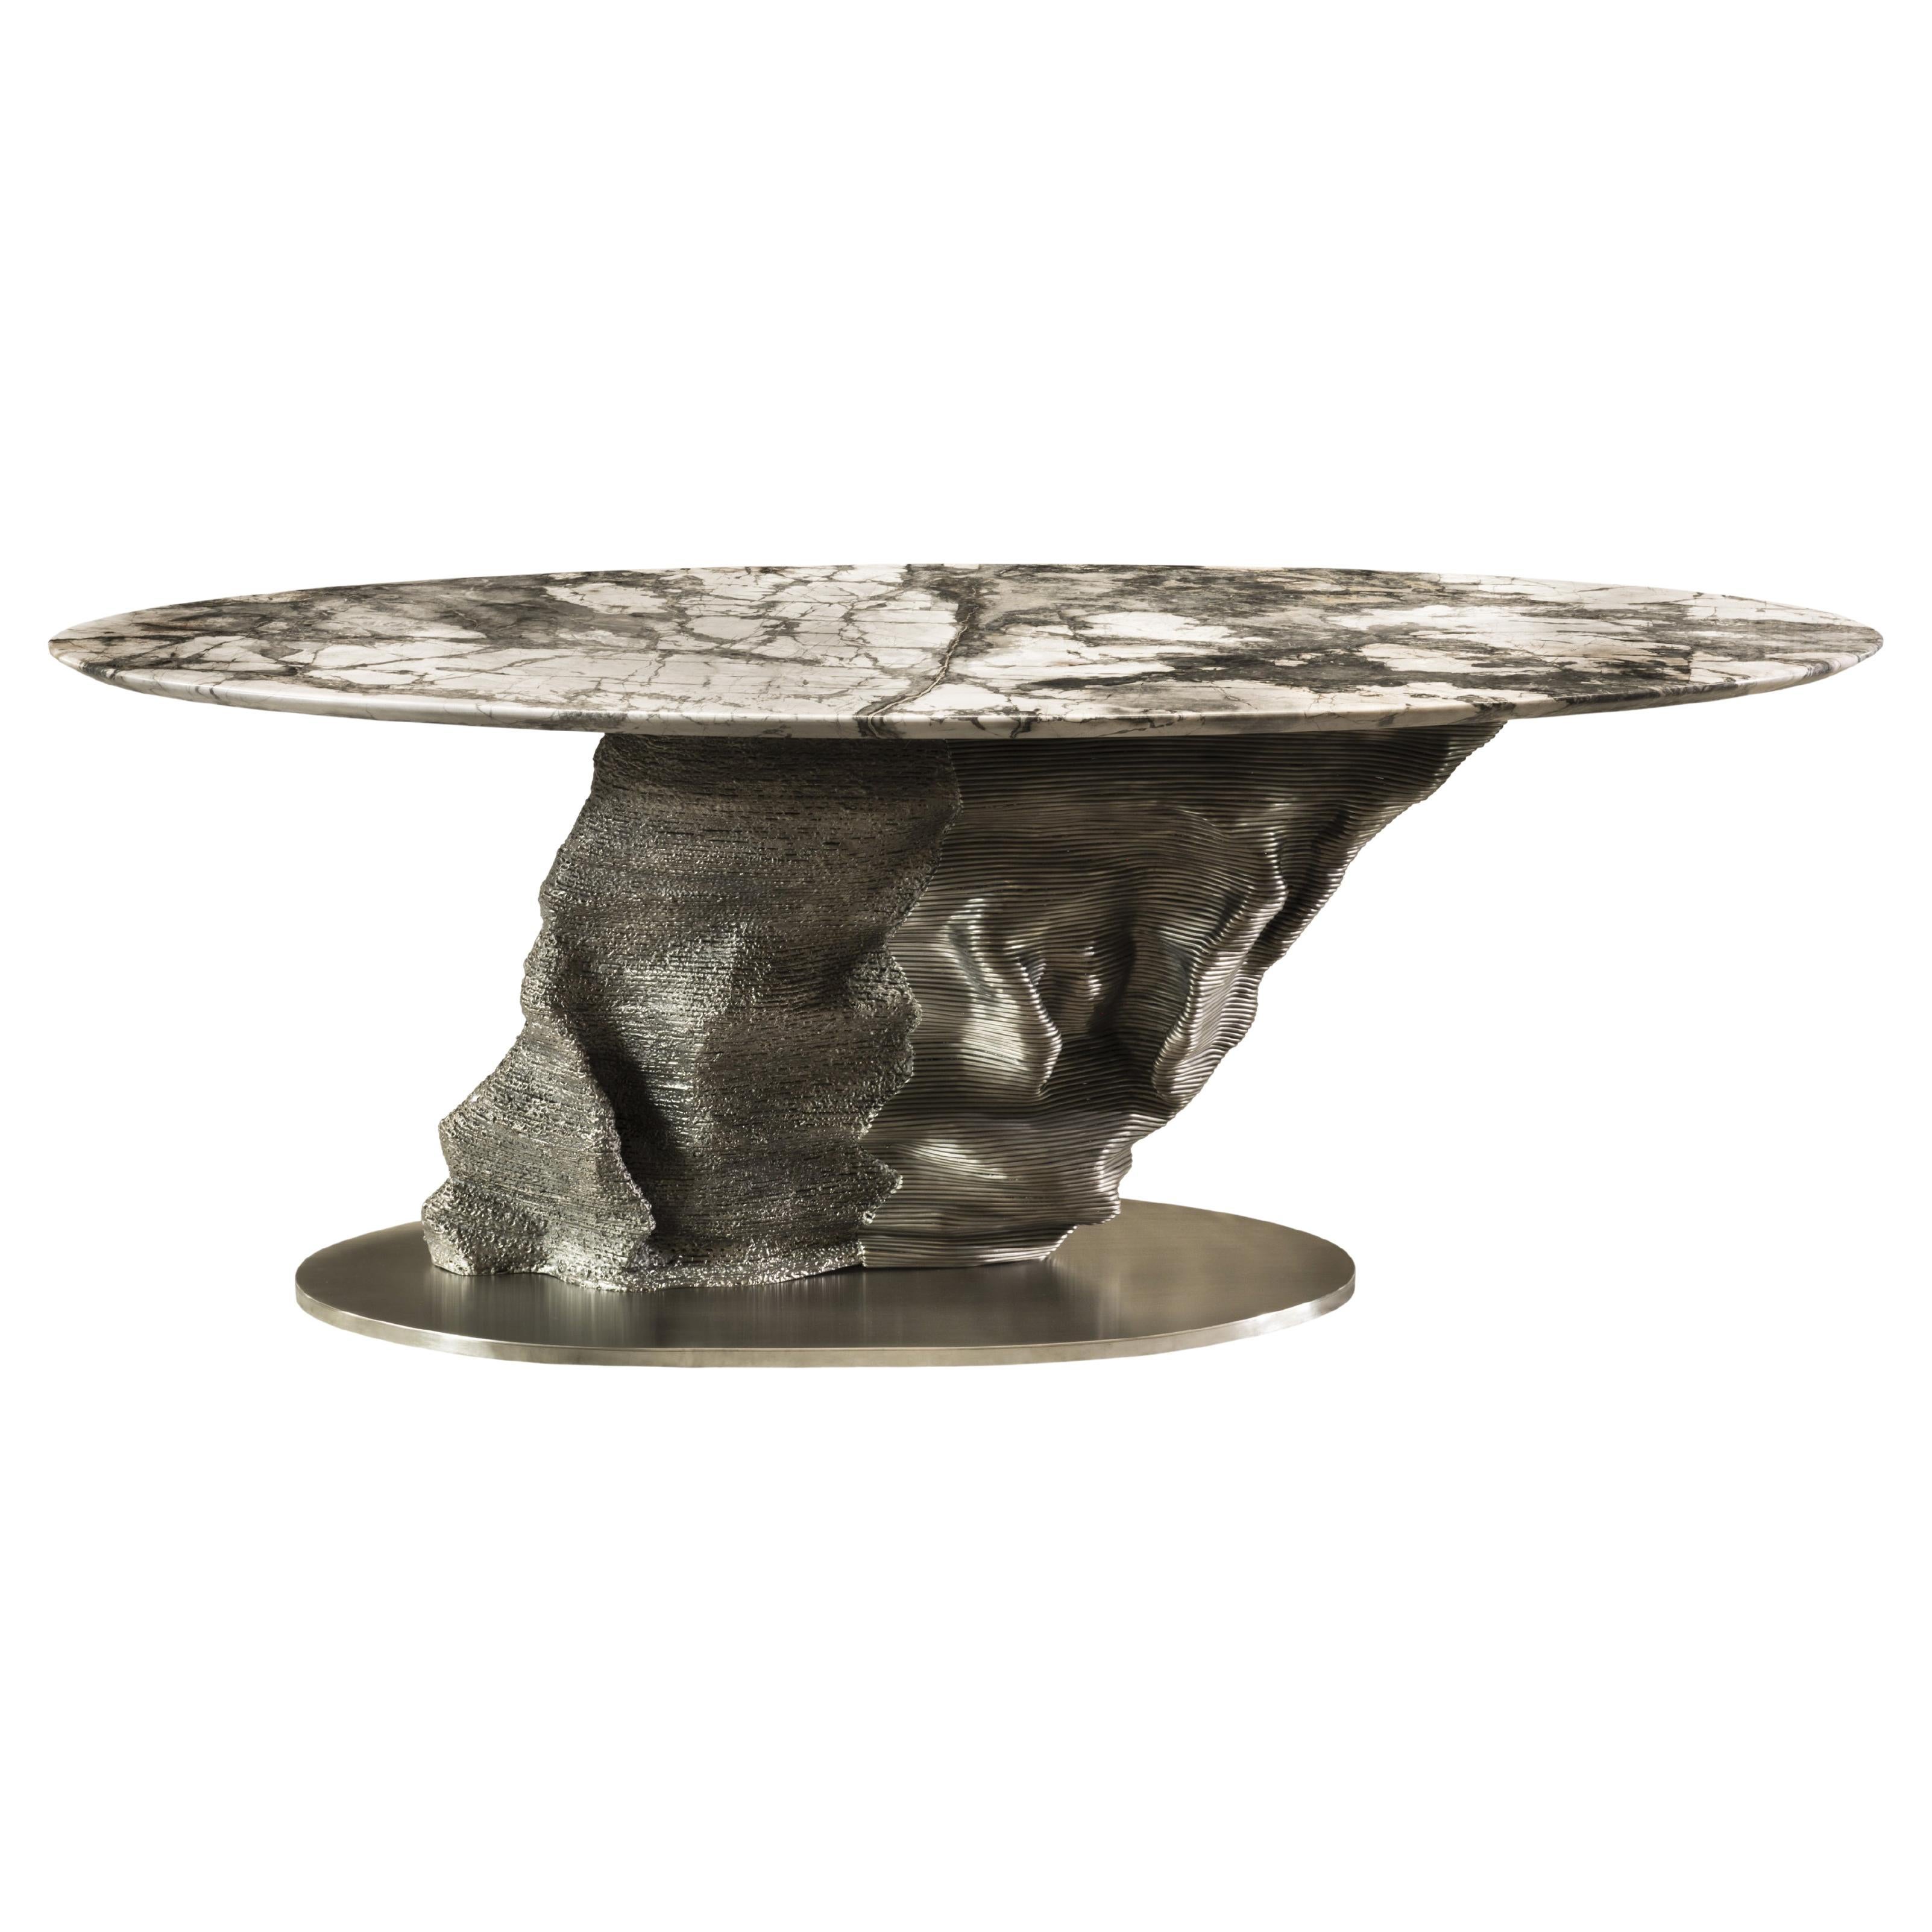 Invisible Grey Marble "Meteorite" design by Giò Pozzi for Officina della Scala